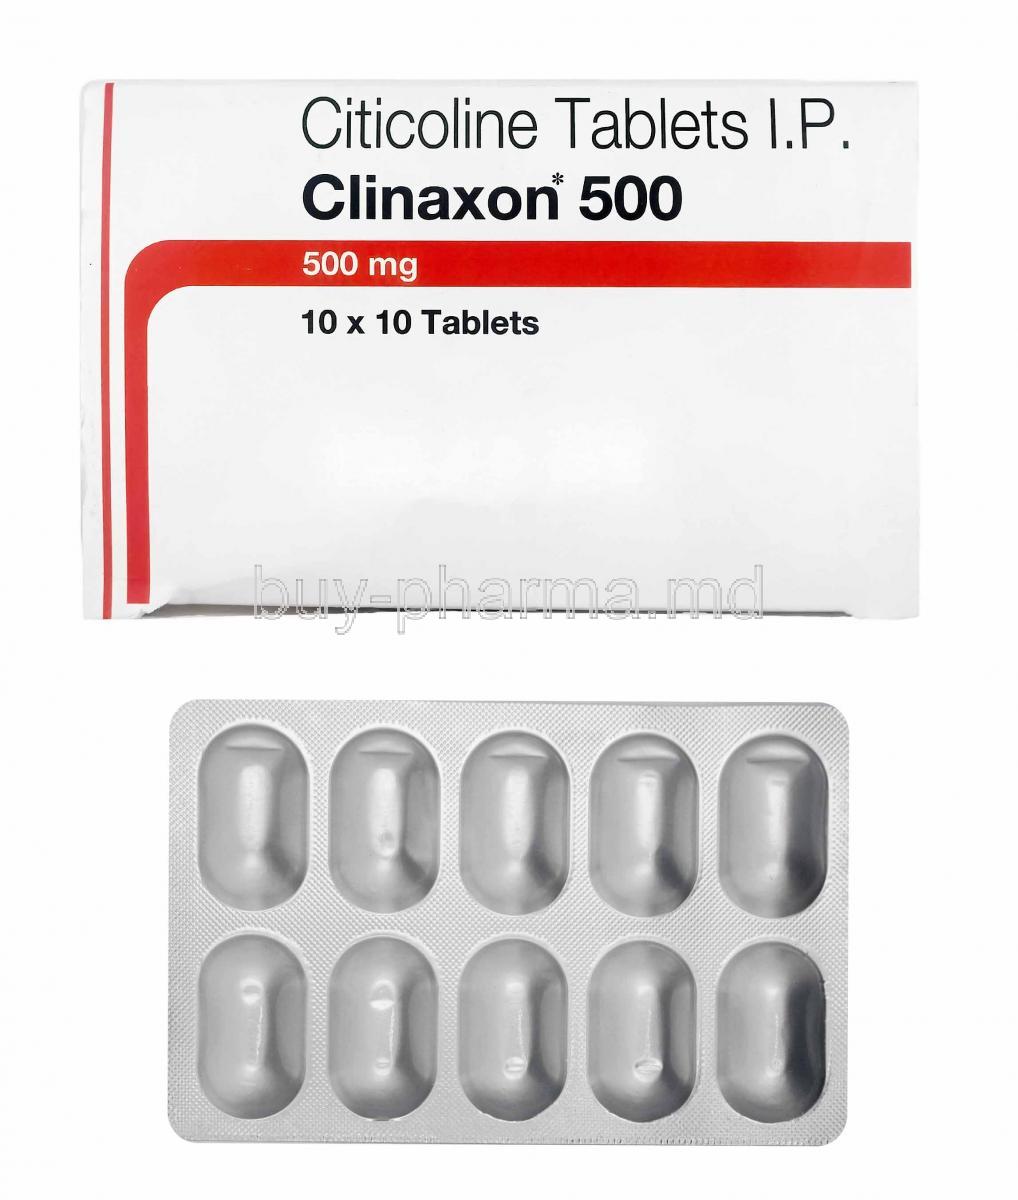 Clinaxon, Citicoline box and tablets